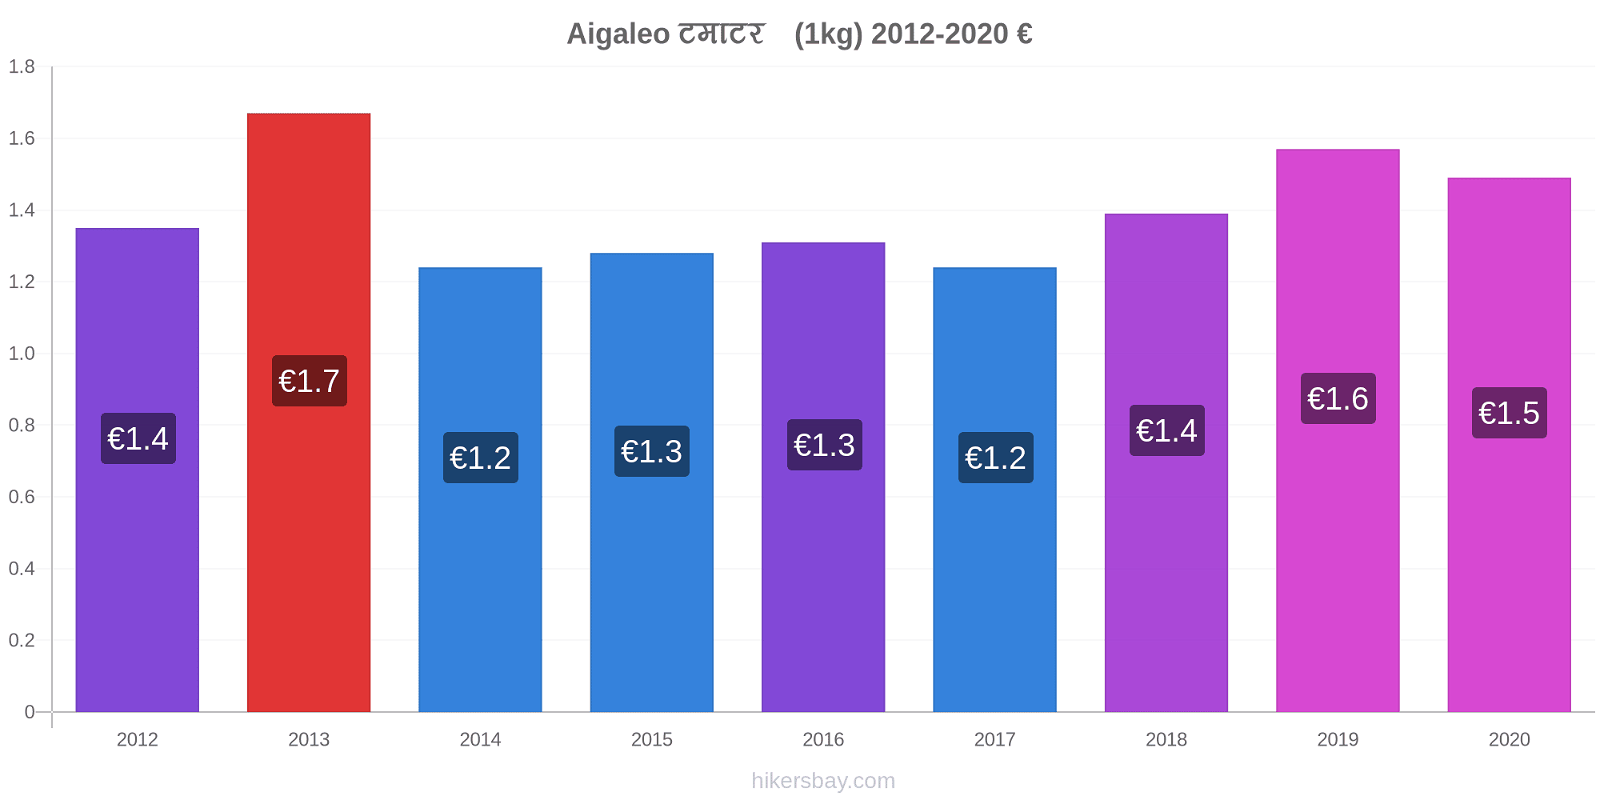 Aigaleo मूल्य परिवर्तन टमाटर (1kg) hikersbay.com